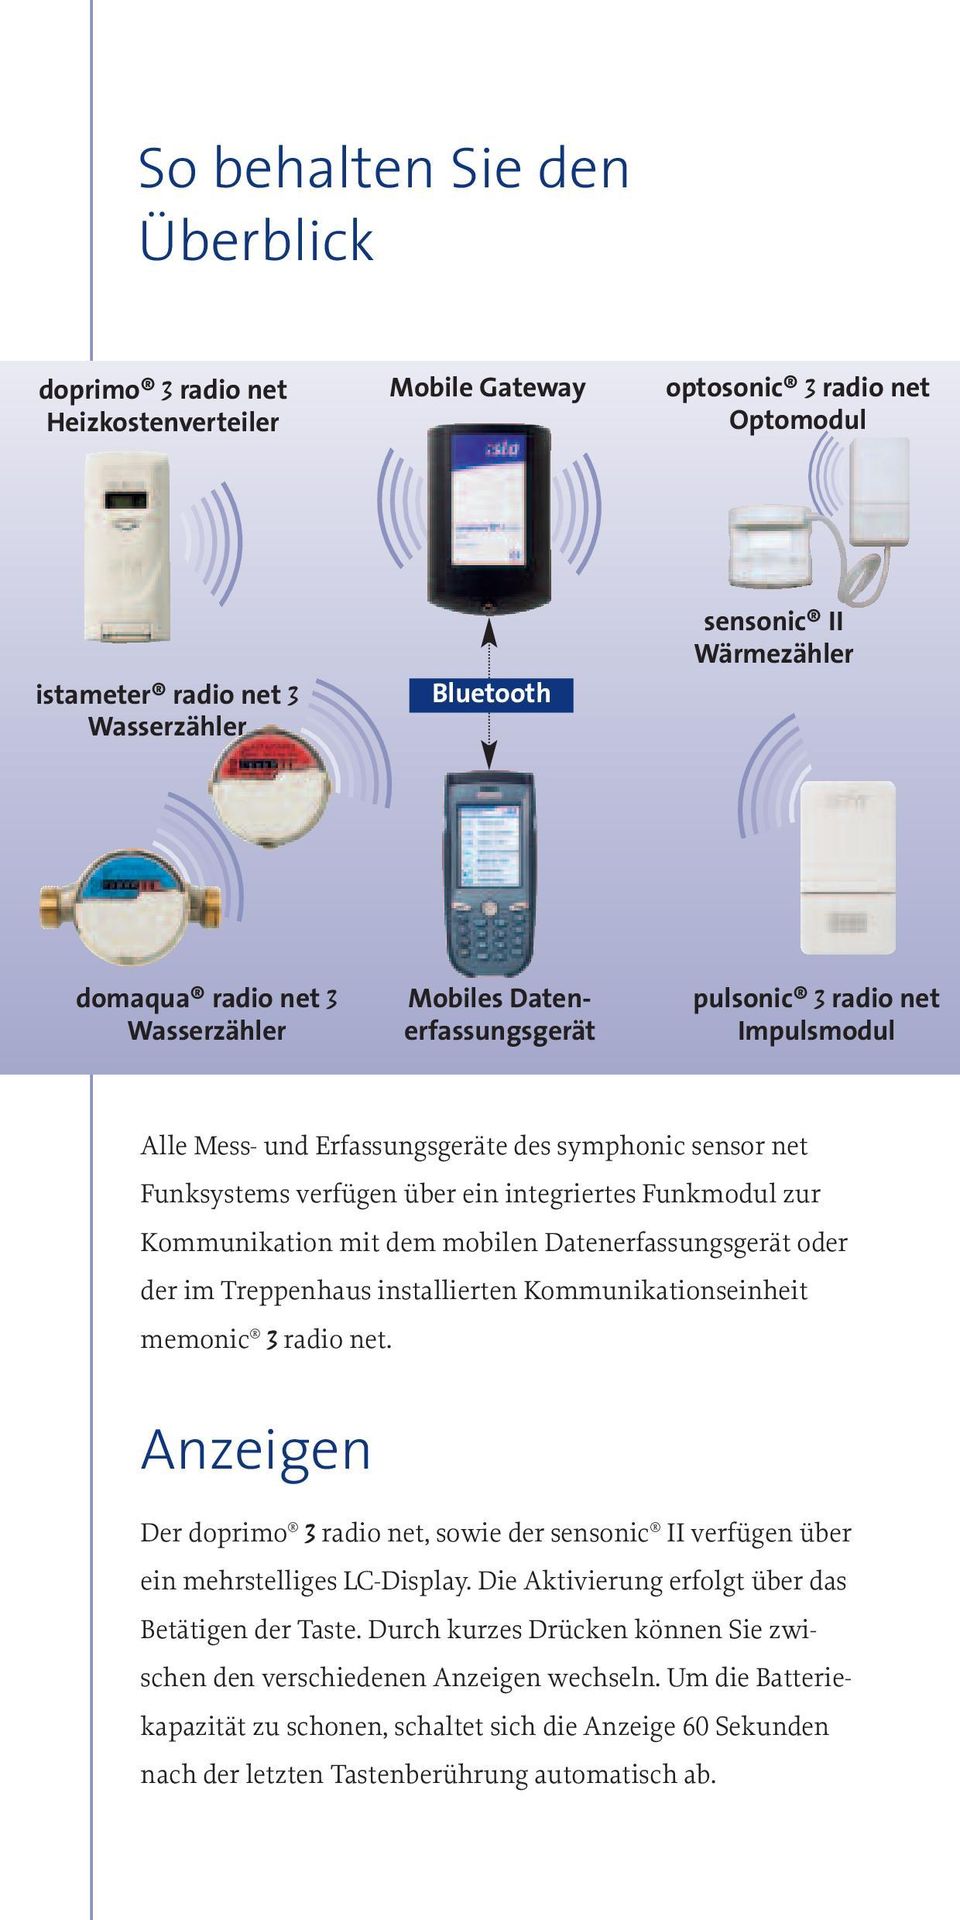 Kommunikation mit dem mobilen Datenerfassungsgerät oder der im Treppenhaus installierten Kommunikationseinheit memonic 3 radio net.